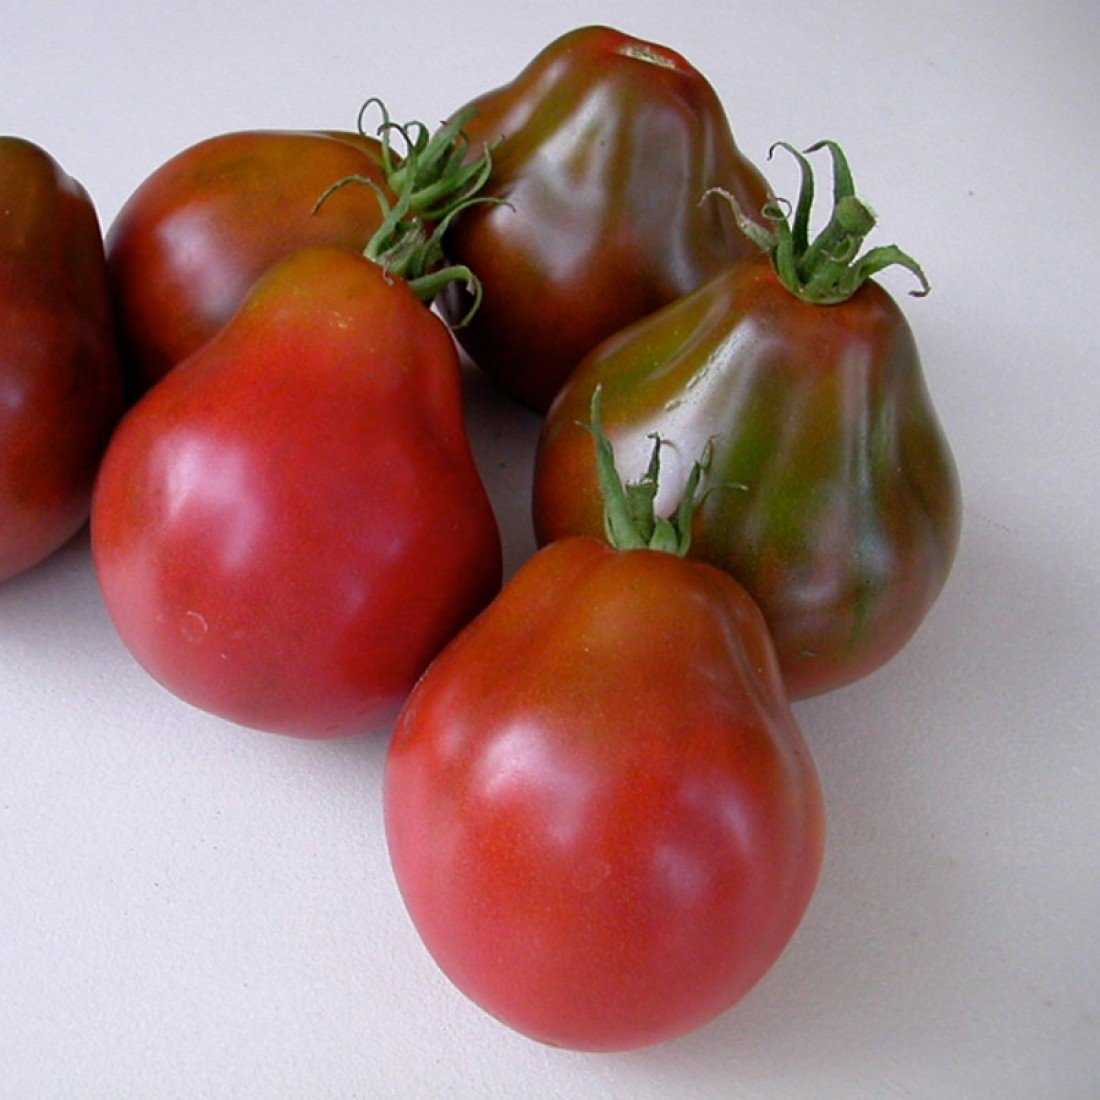 Описание и характеристика томата с грибным названием — «трюфель»